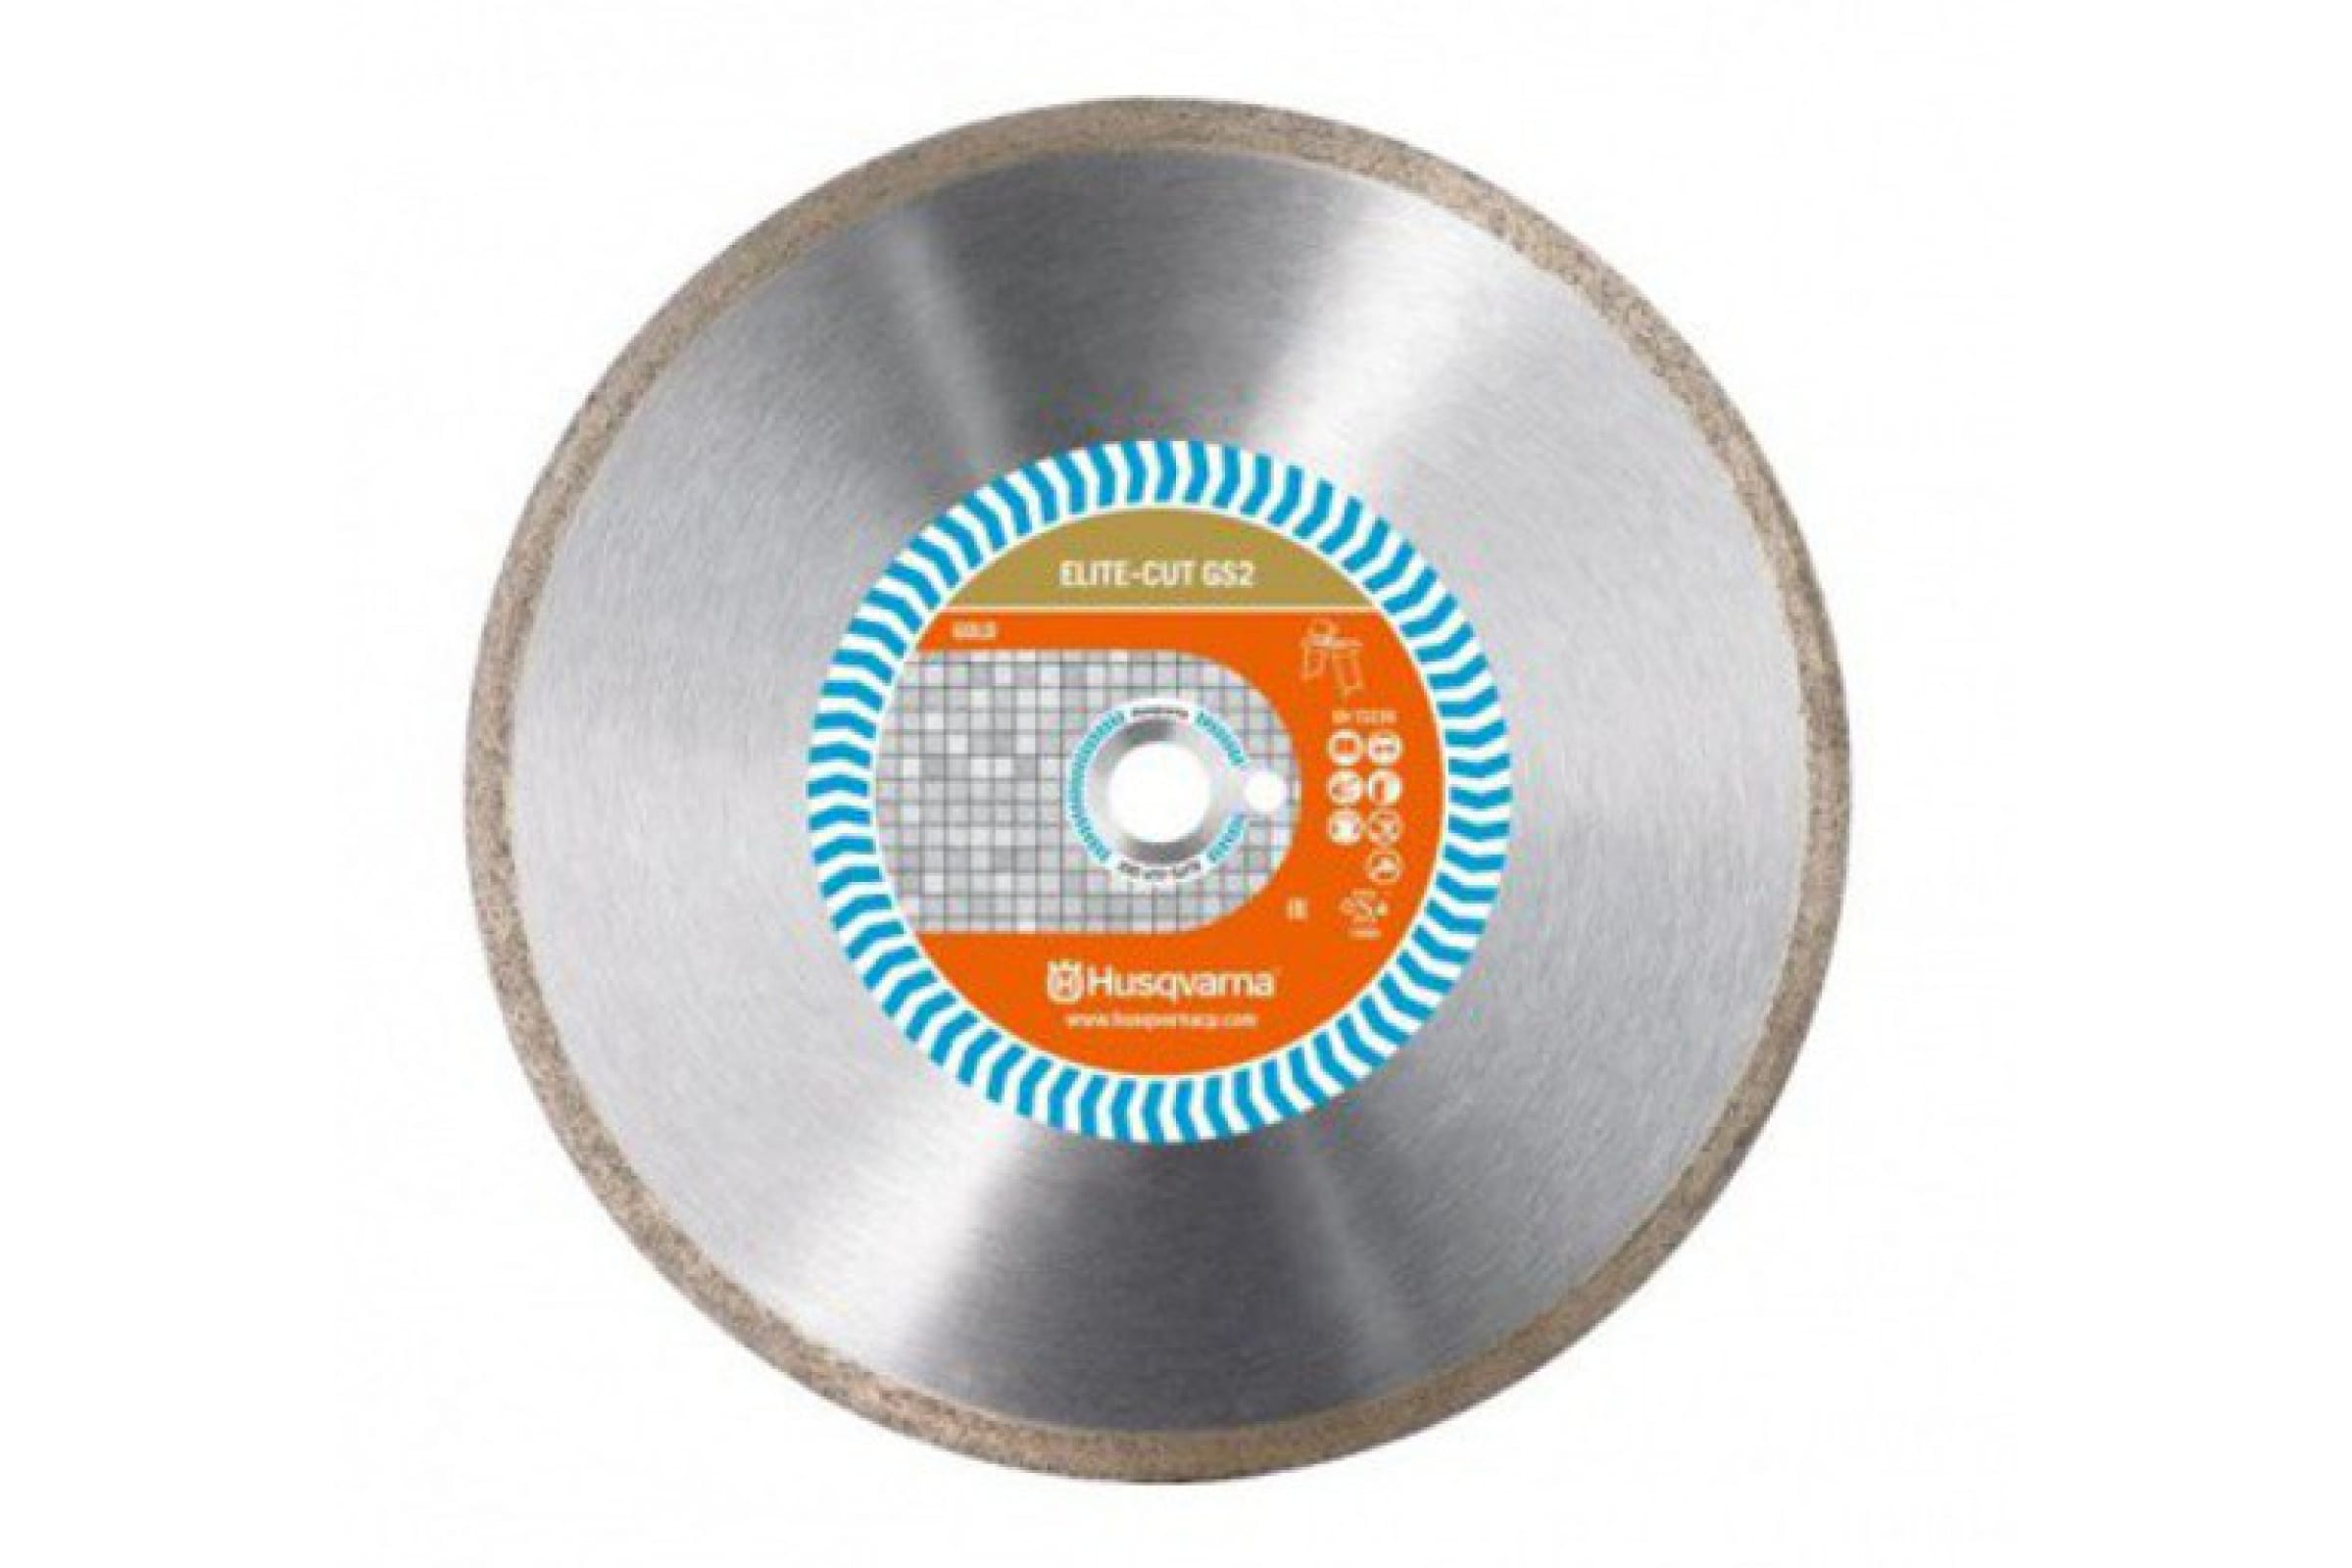 Husqvarna Construction Алмазный диск ELITE-CUTGS2 350 10 25.4 5797981-20